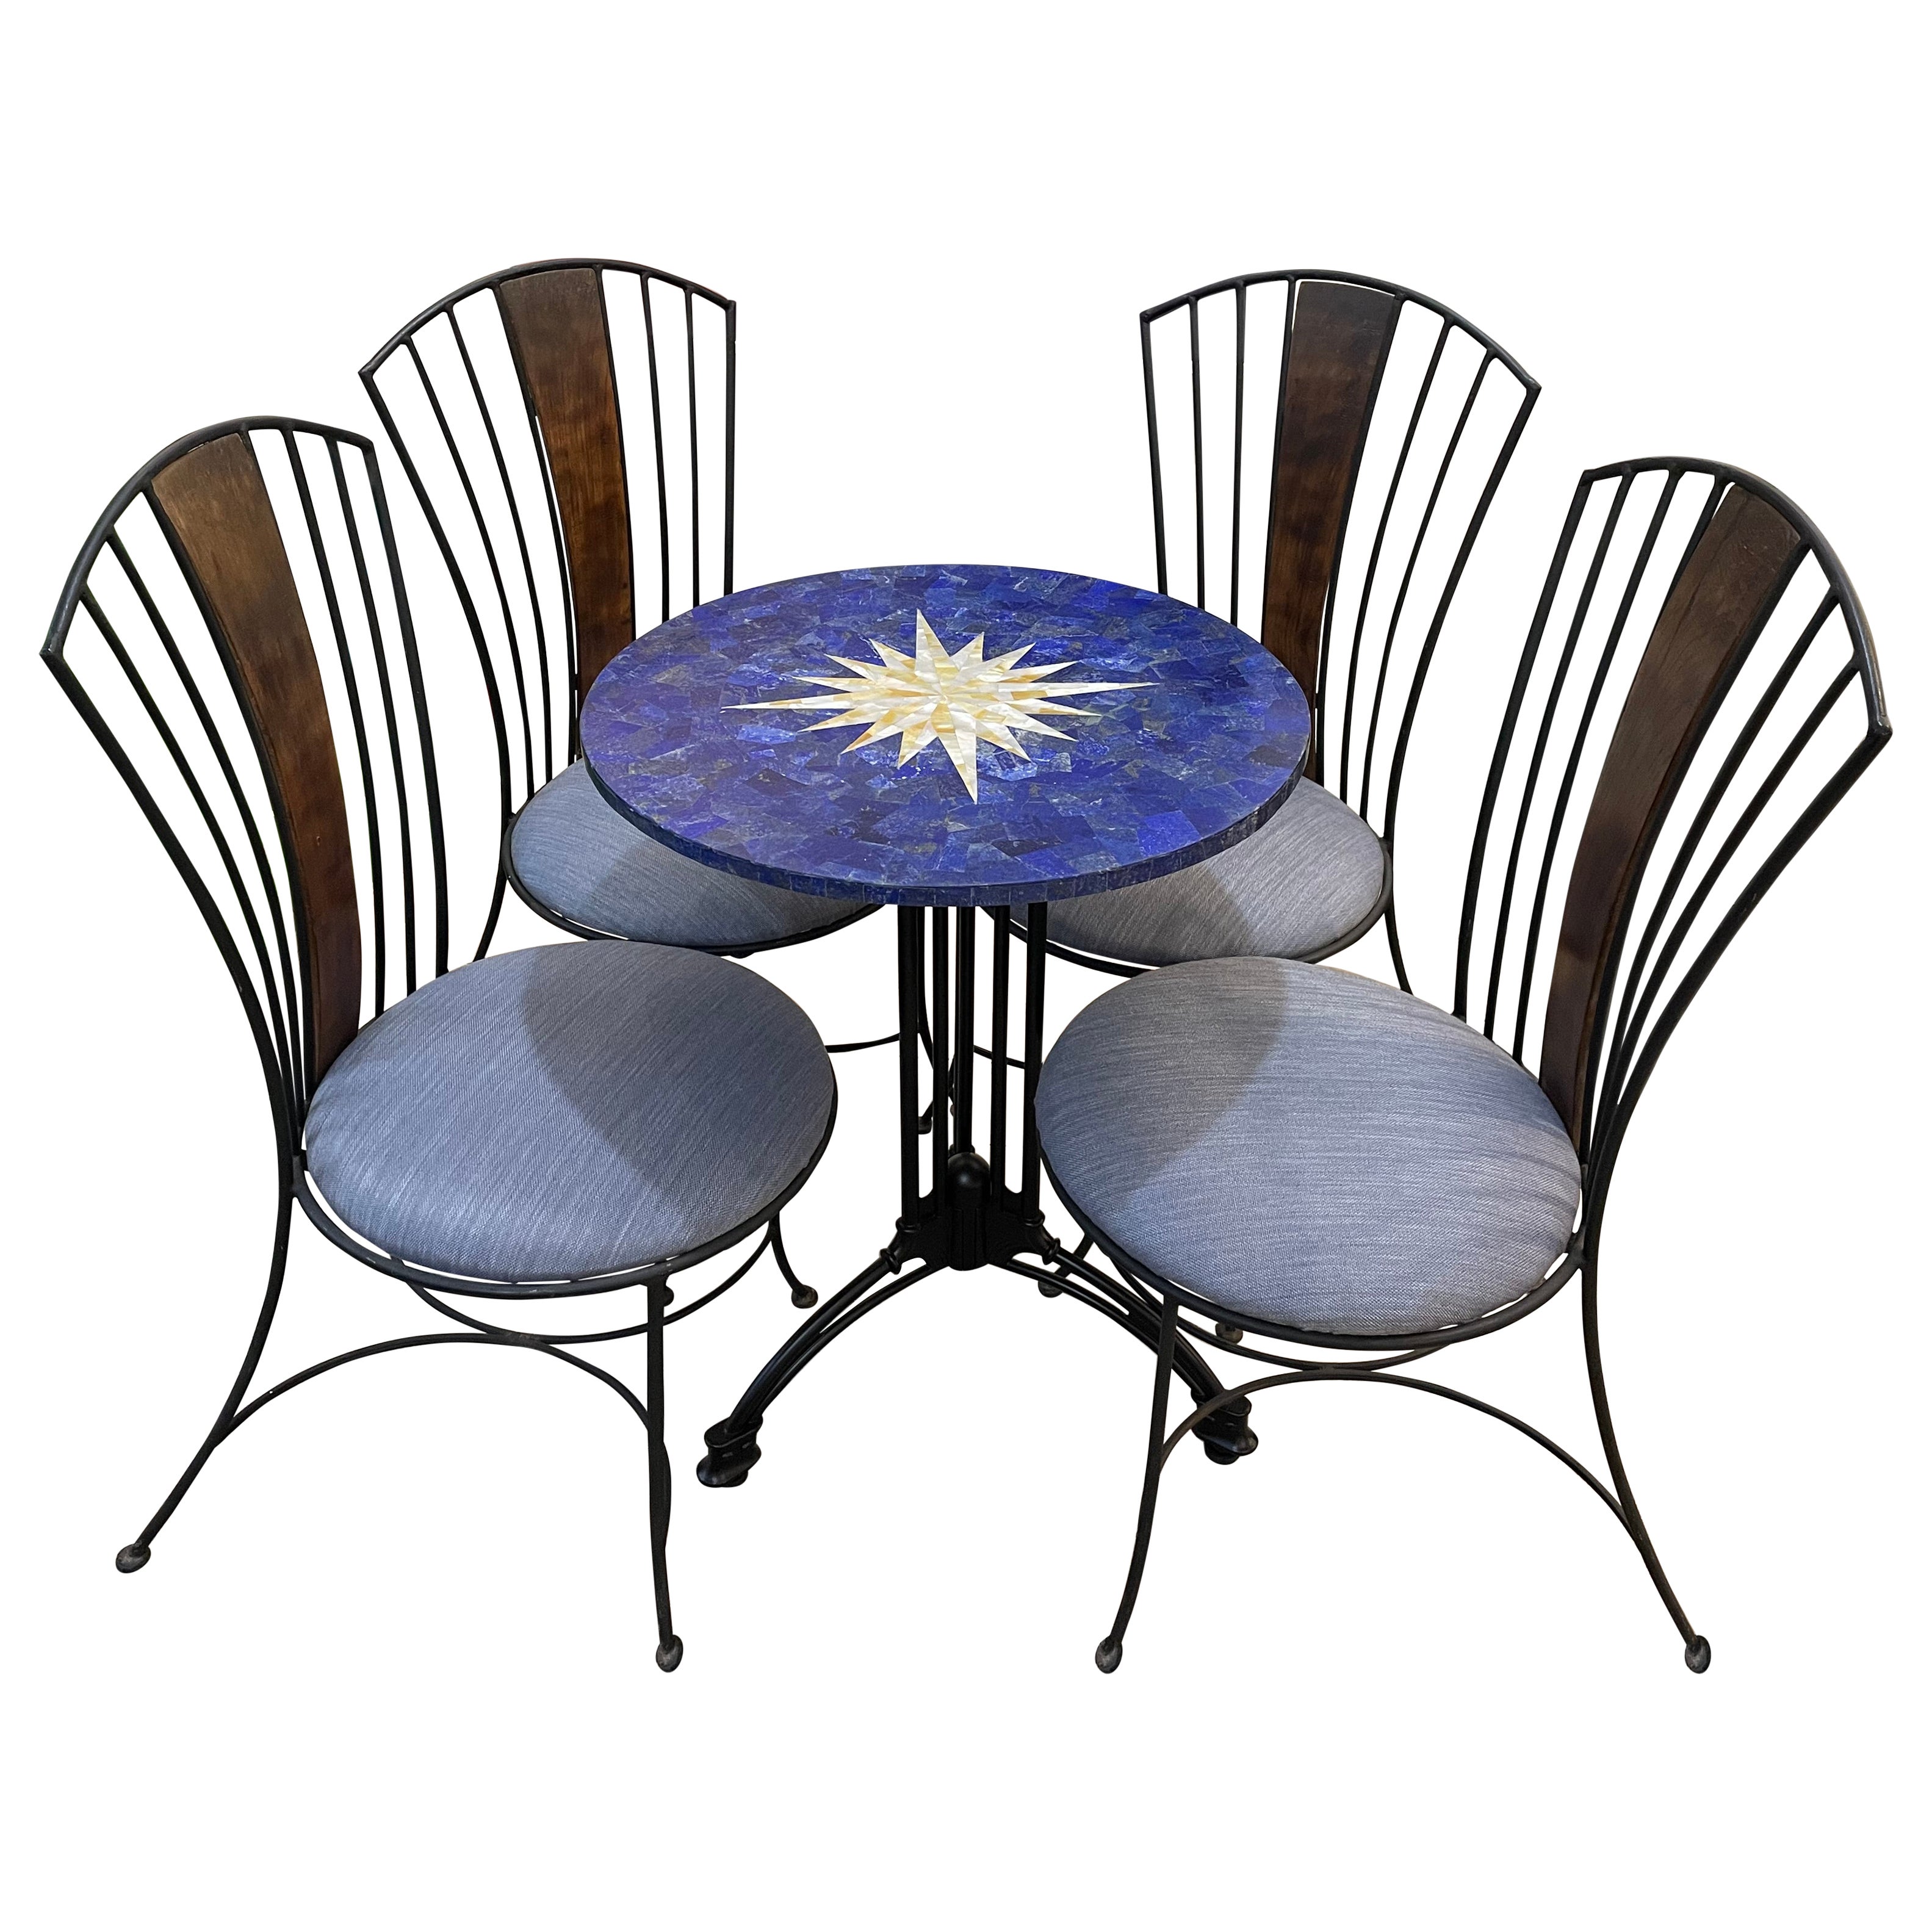 Pietra Dura Cafe-Tisch aus Lapislazuli und Perlmutt mit vier Eisenstühlen und Kissen